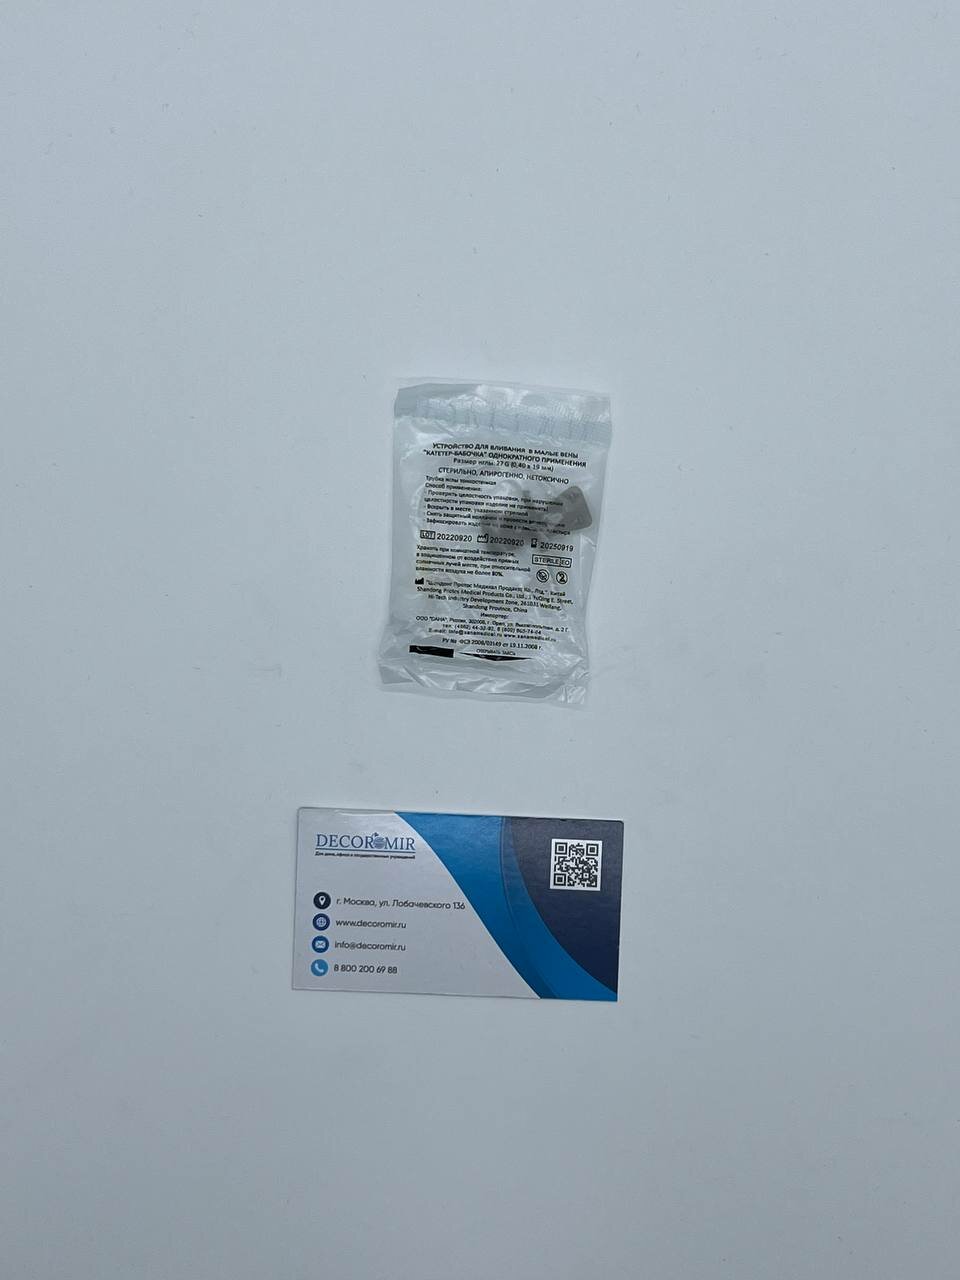 100 шт. Канюля (27Gx3/4") инфузионная Сана серый (Игла бабочка) Decoromir стерильная 0.4x19 мм для в/в в малые вены